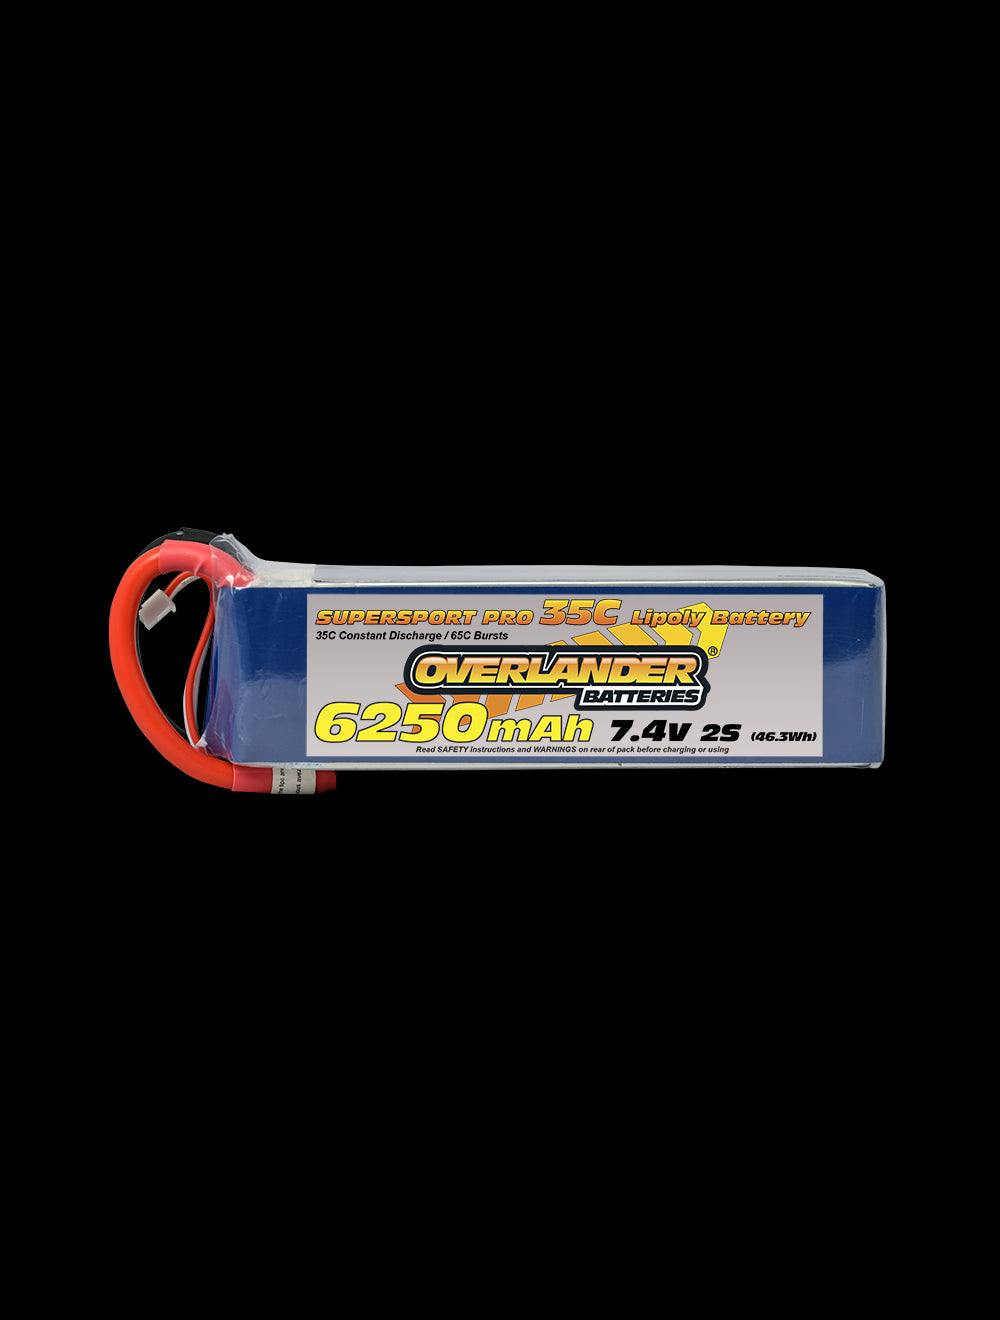 Overlander 6250mAh 7.4V 2S 35C Supersport Pro LiPo Battery - No Connector 2779